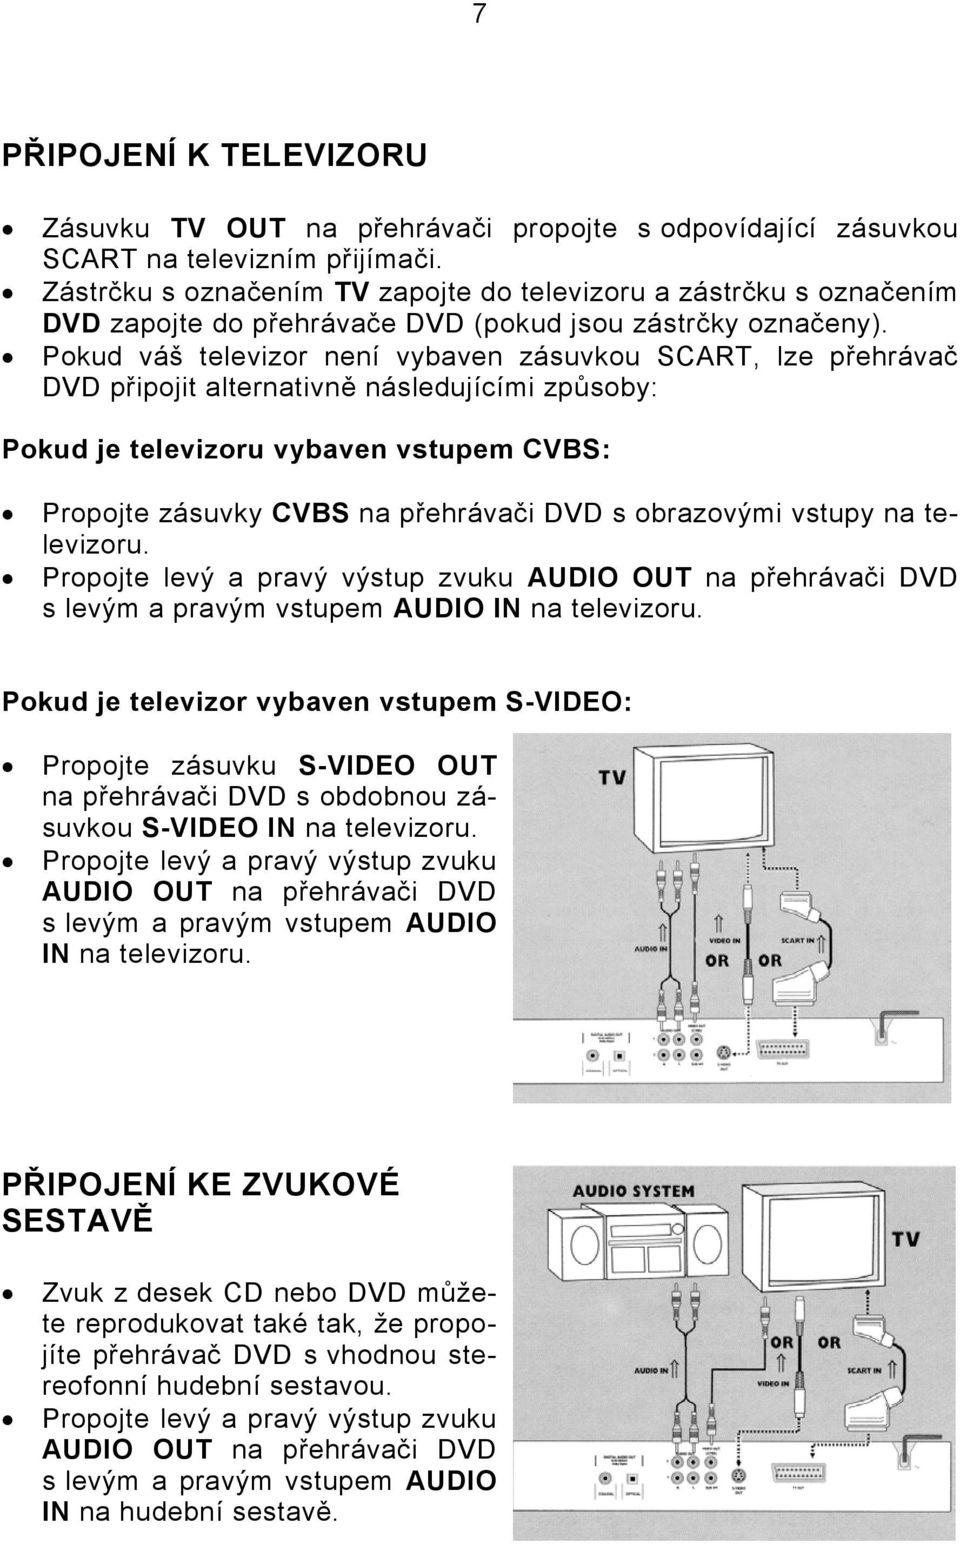 Pokud váš televizor není vybaven zásuvkou SCART, lze přehrávač DVD připojit alternativně následujícími způsoby: Pokud je televizoru vybaven vstupem CVBS: Propojte zásuvky CVBS na přehrávači DVD s